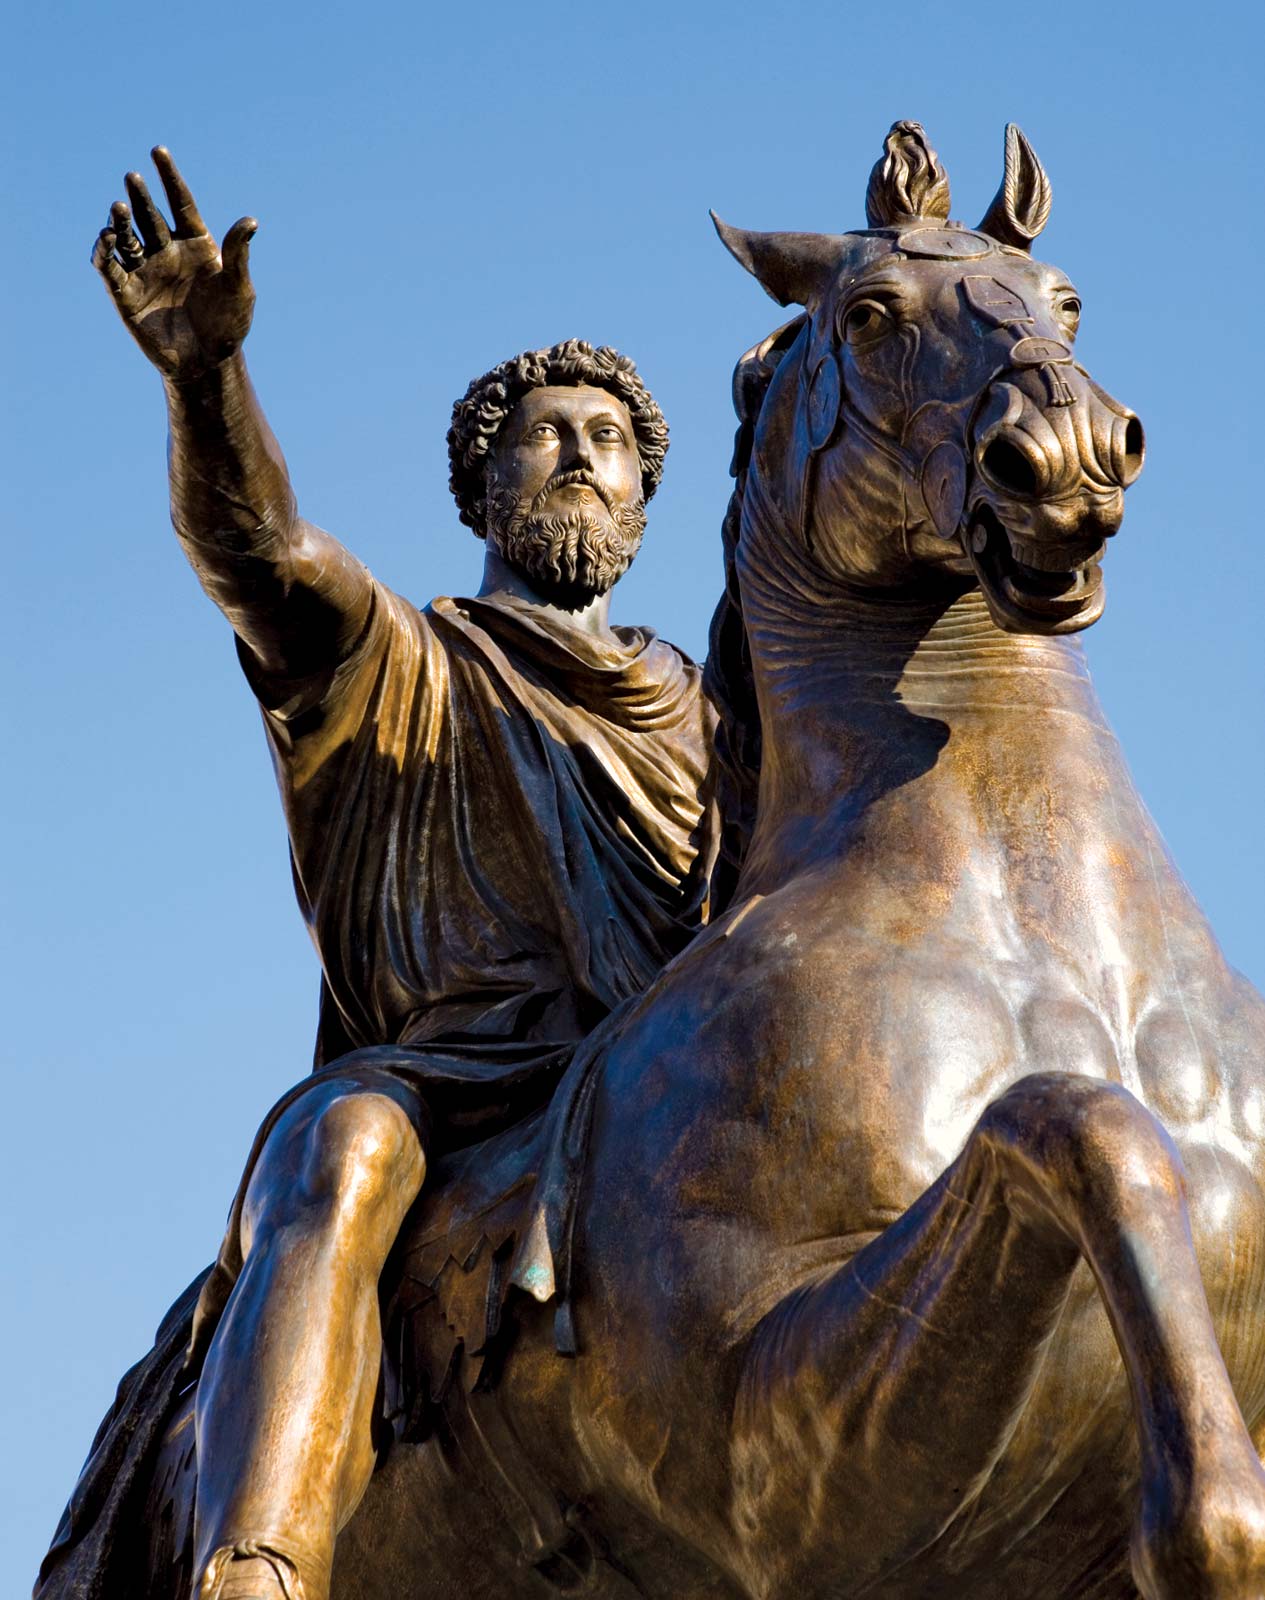 मार्कस ऑरेलियस की मृत्यु 58 वर्ष की आयु में 17 मार्च 180 ईस्वी को सिरमियम, पैनोनिया (आधुनिक श्रीमस्का मित्रोविका) के पास हुई थी।